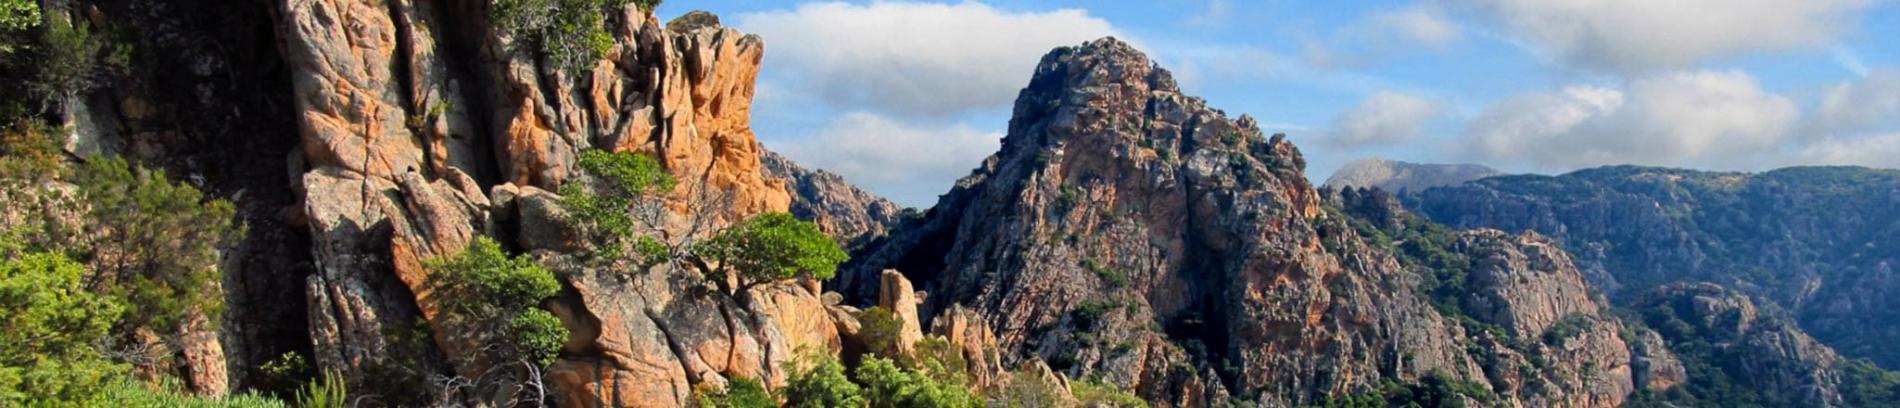 Slide Les roches de Corse